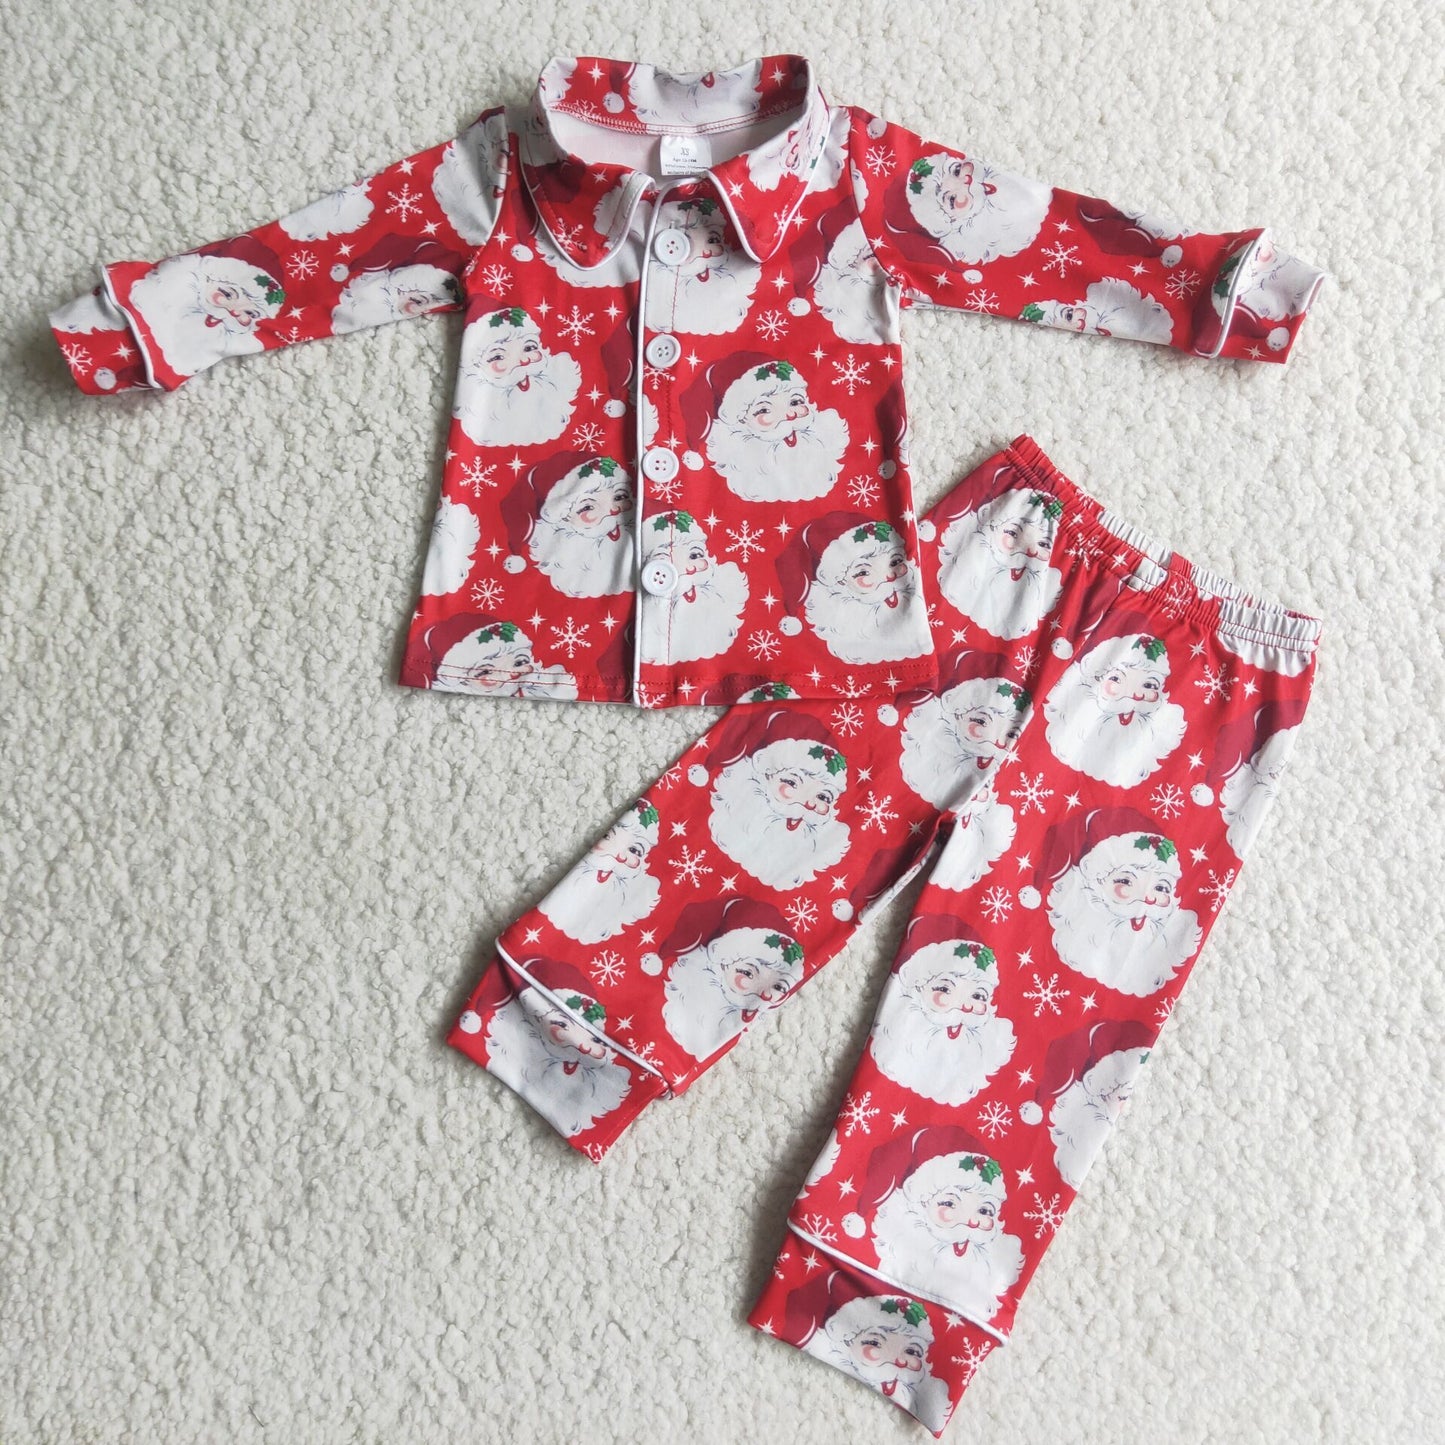 Santa print boy Christmas pajamas